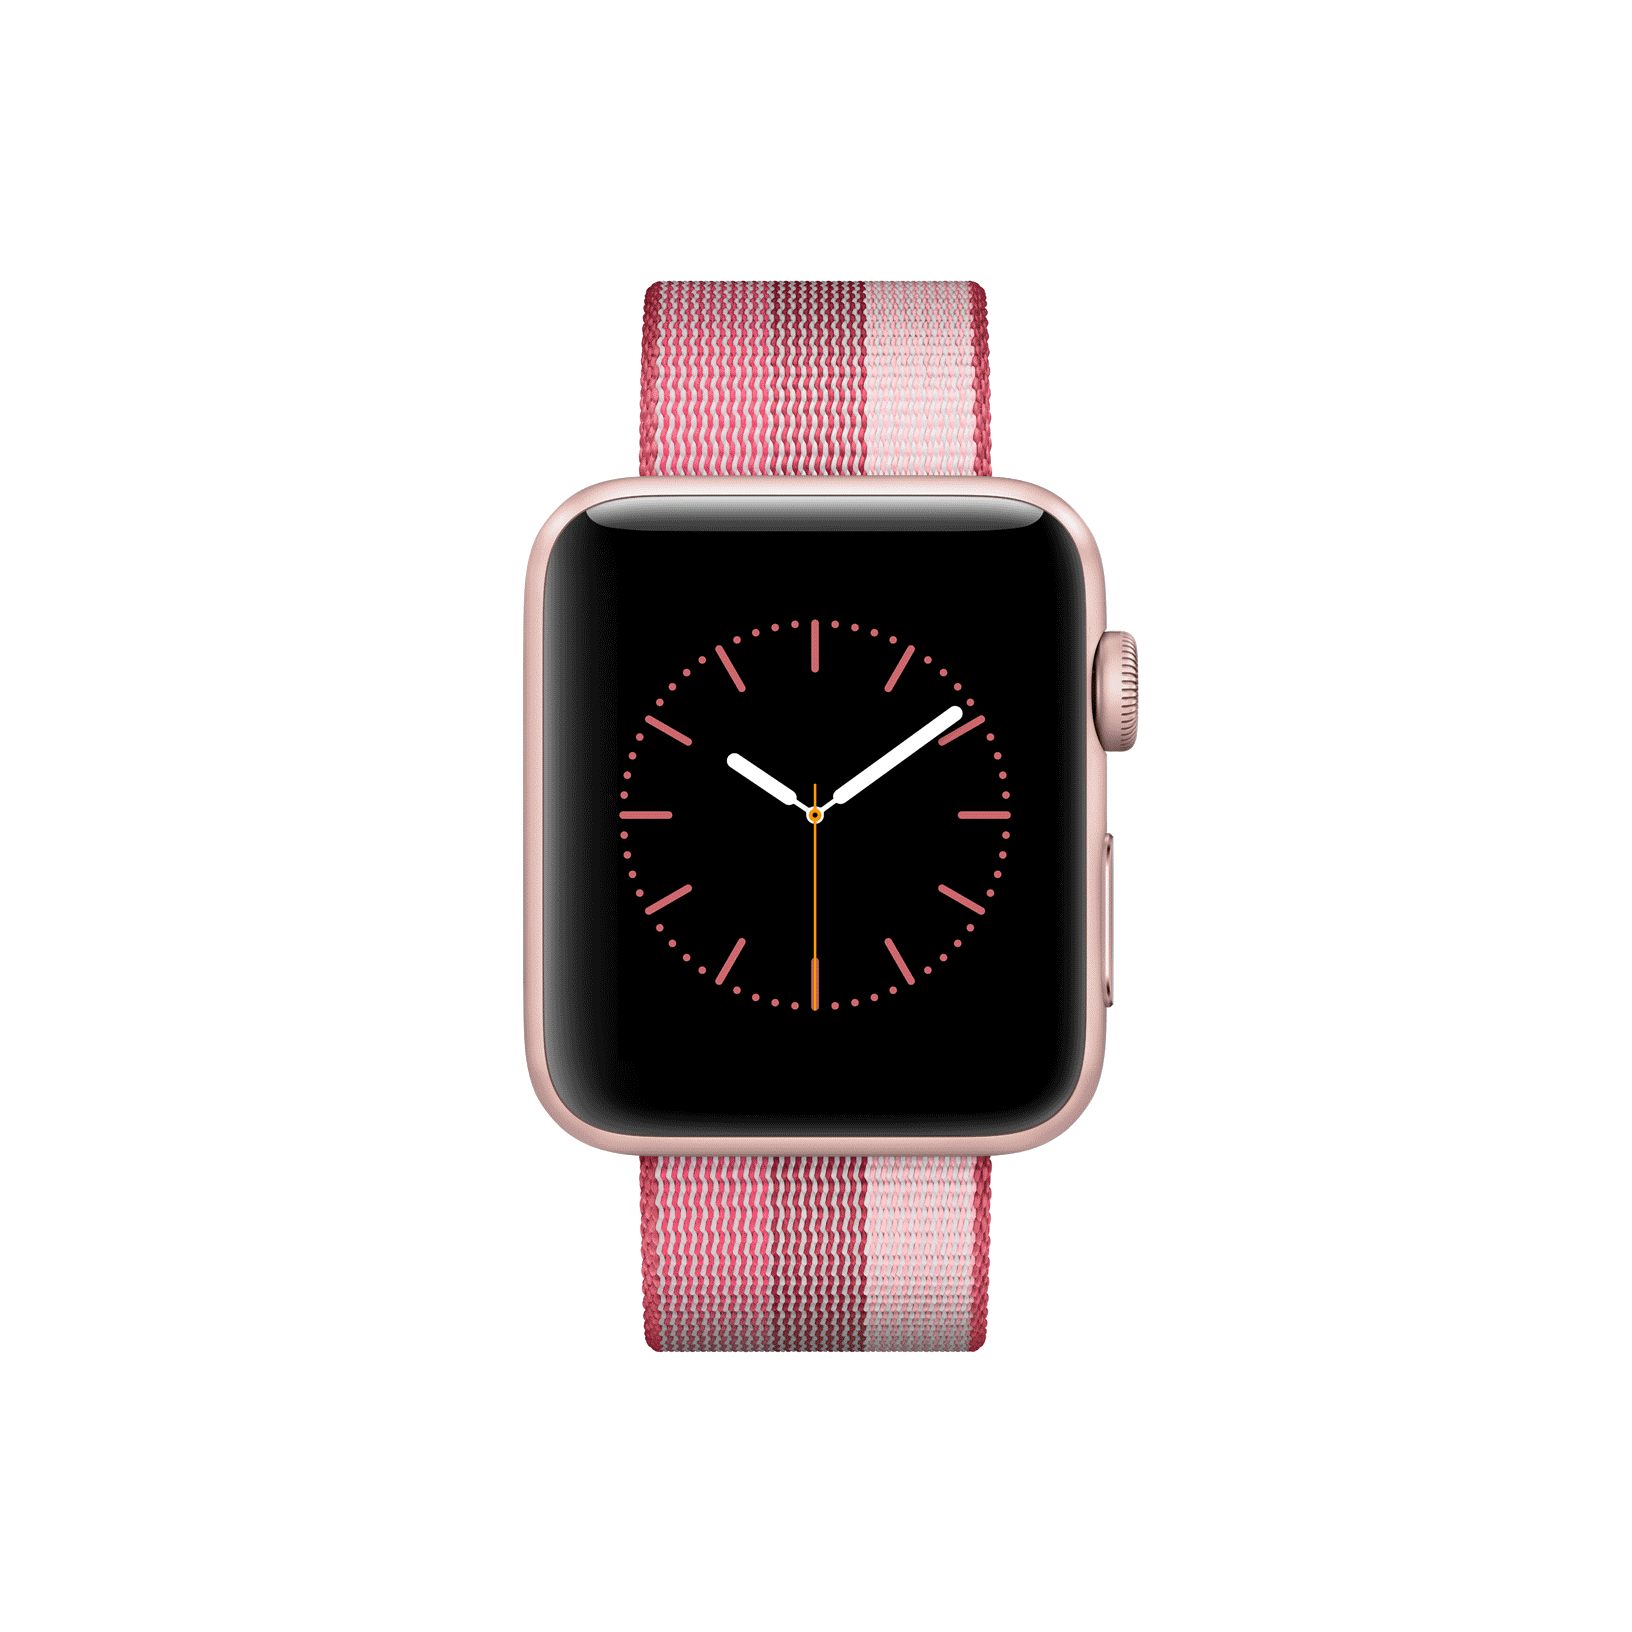 2017年春季Apple Watch表带新品系列一览